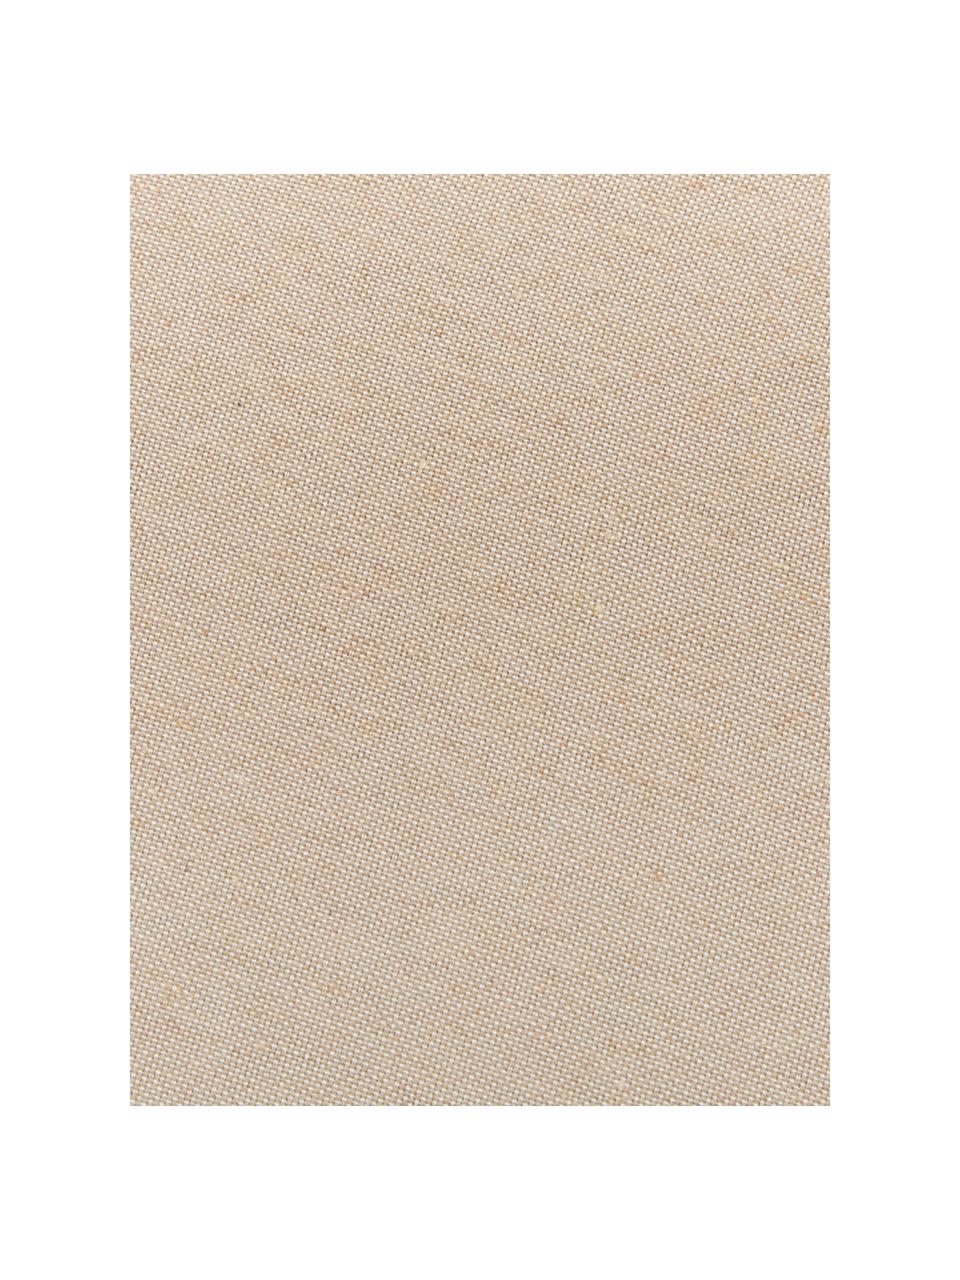 Coussin pour banc beige uni Panama, Beige, larg. 48 x long. 120 cm